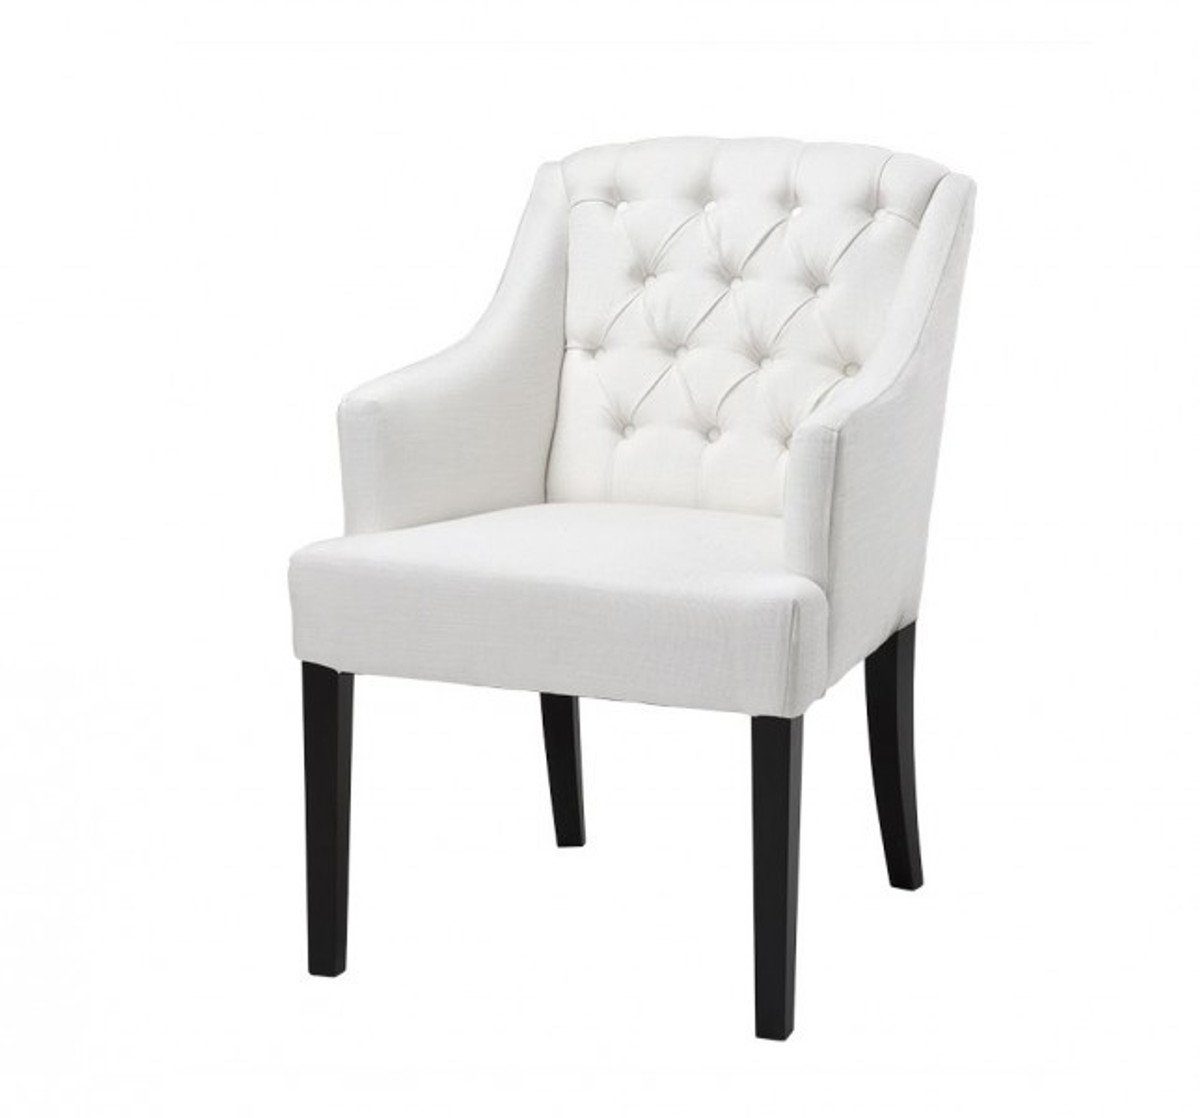 Casa Padrino Armlehnstuhl Luxus Stuhl mit Armlehne Elfenbein - Wohnzimmer Hotel Möbel